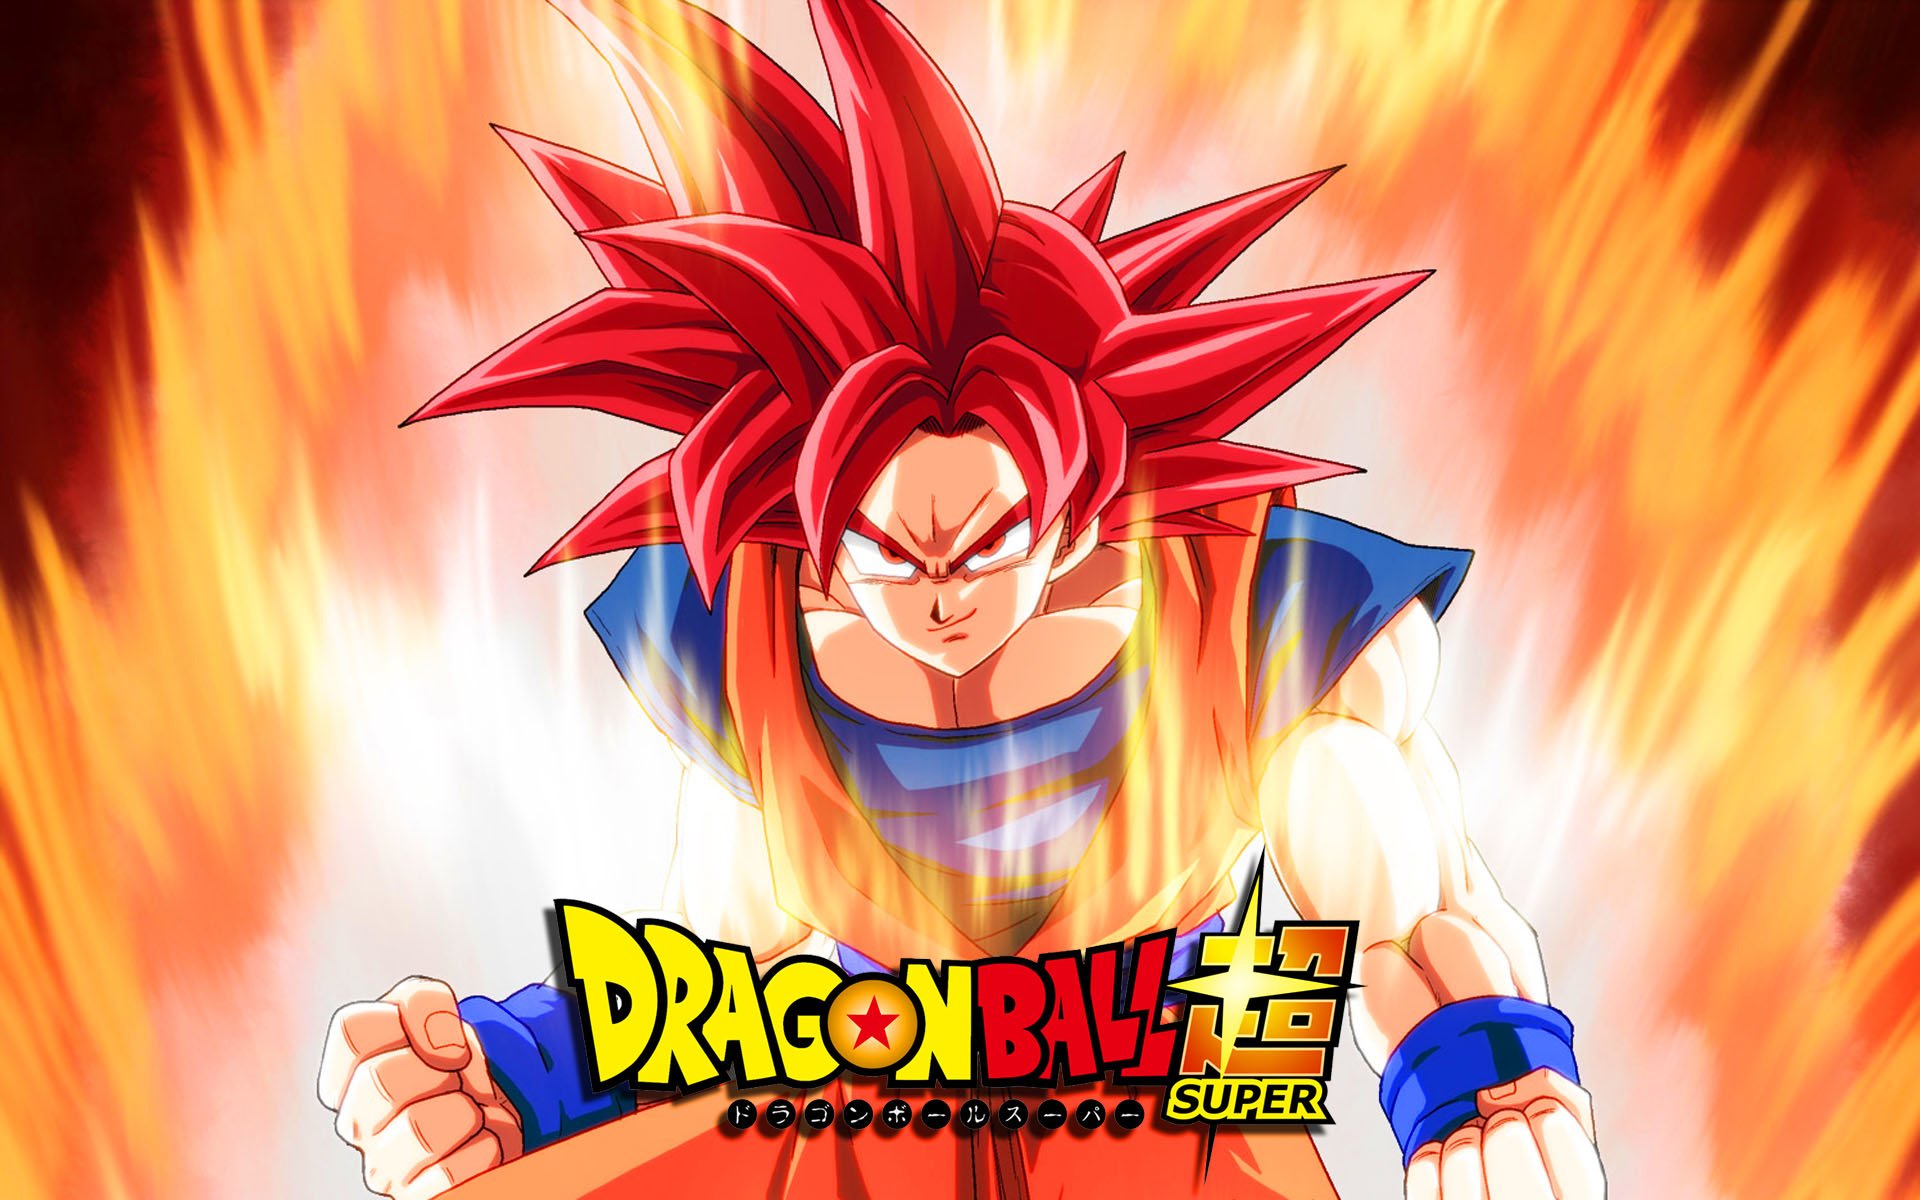 ▷ Dragon Ball Super: Imágenes y Fondos de Pantalla ¡Mega Galería! | Fondos  de Pantalla